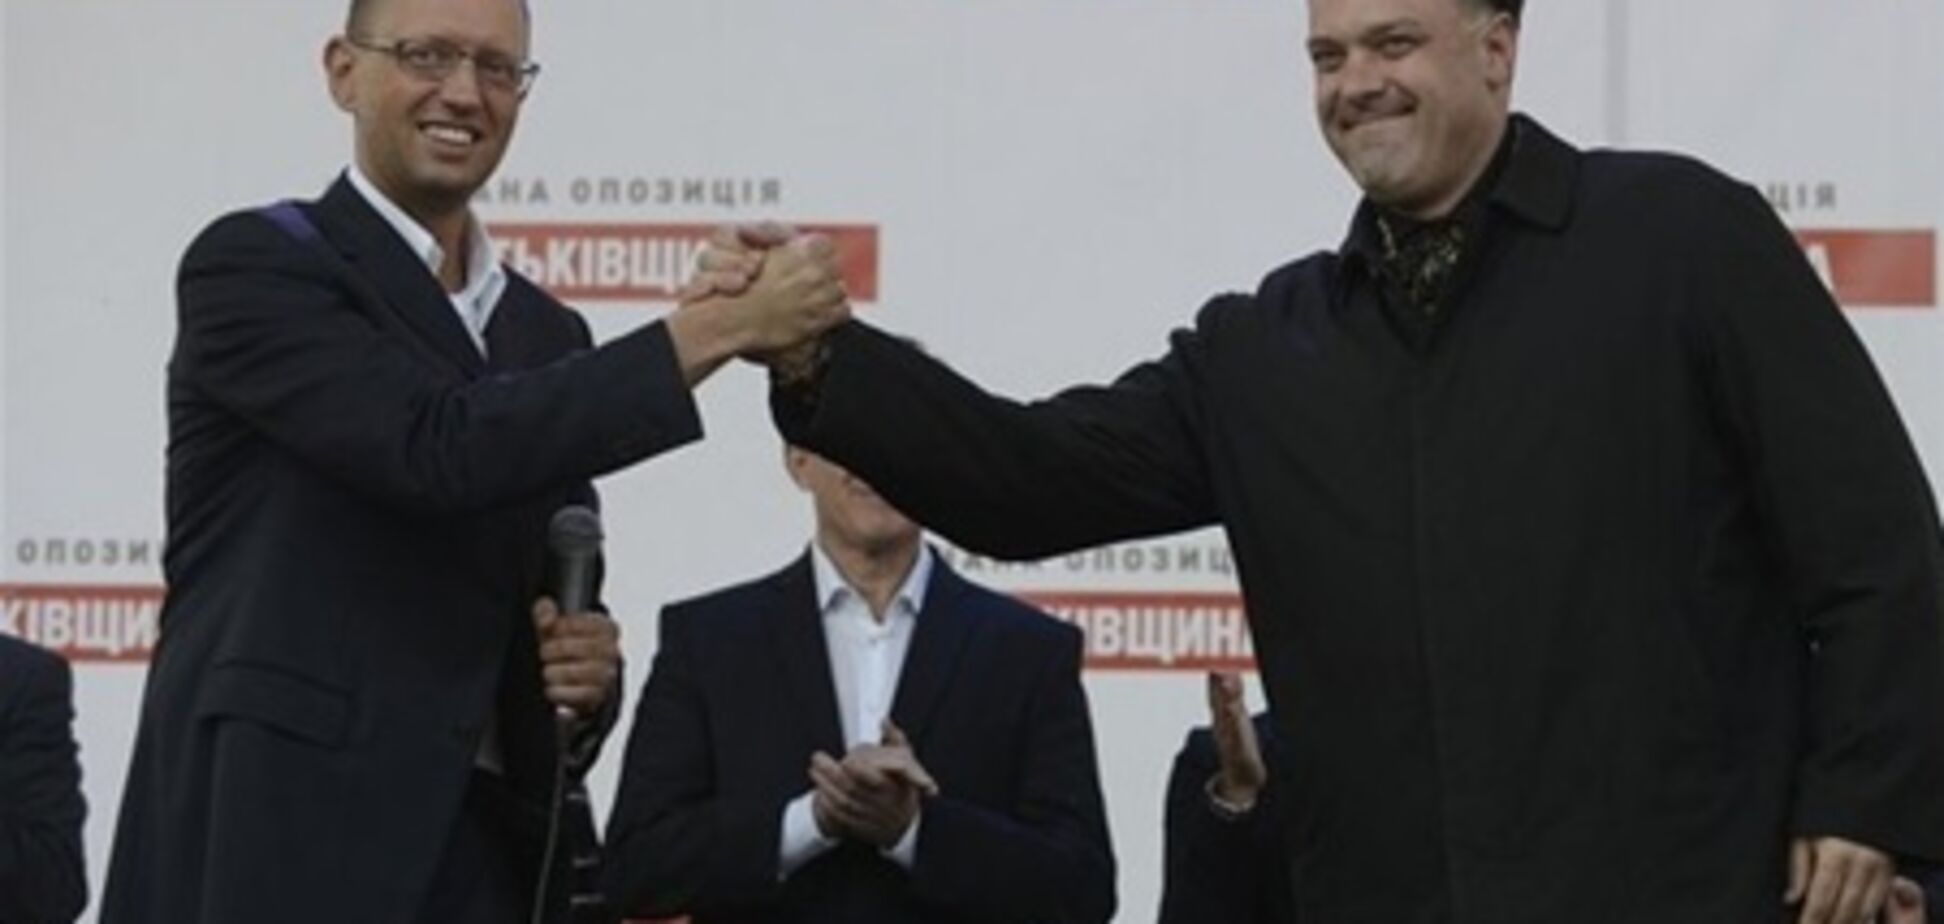 Яценюк і Тягнибок по-різному оцінили заклик Тимошенко